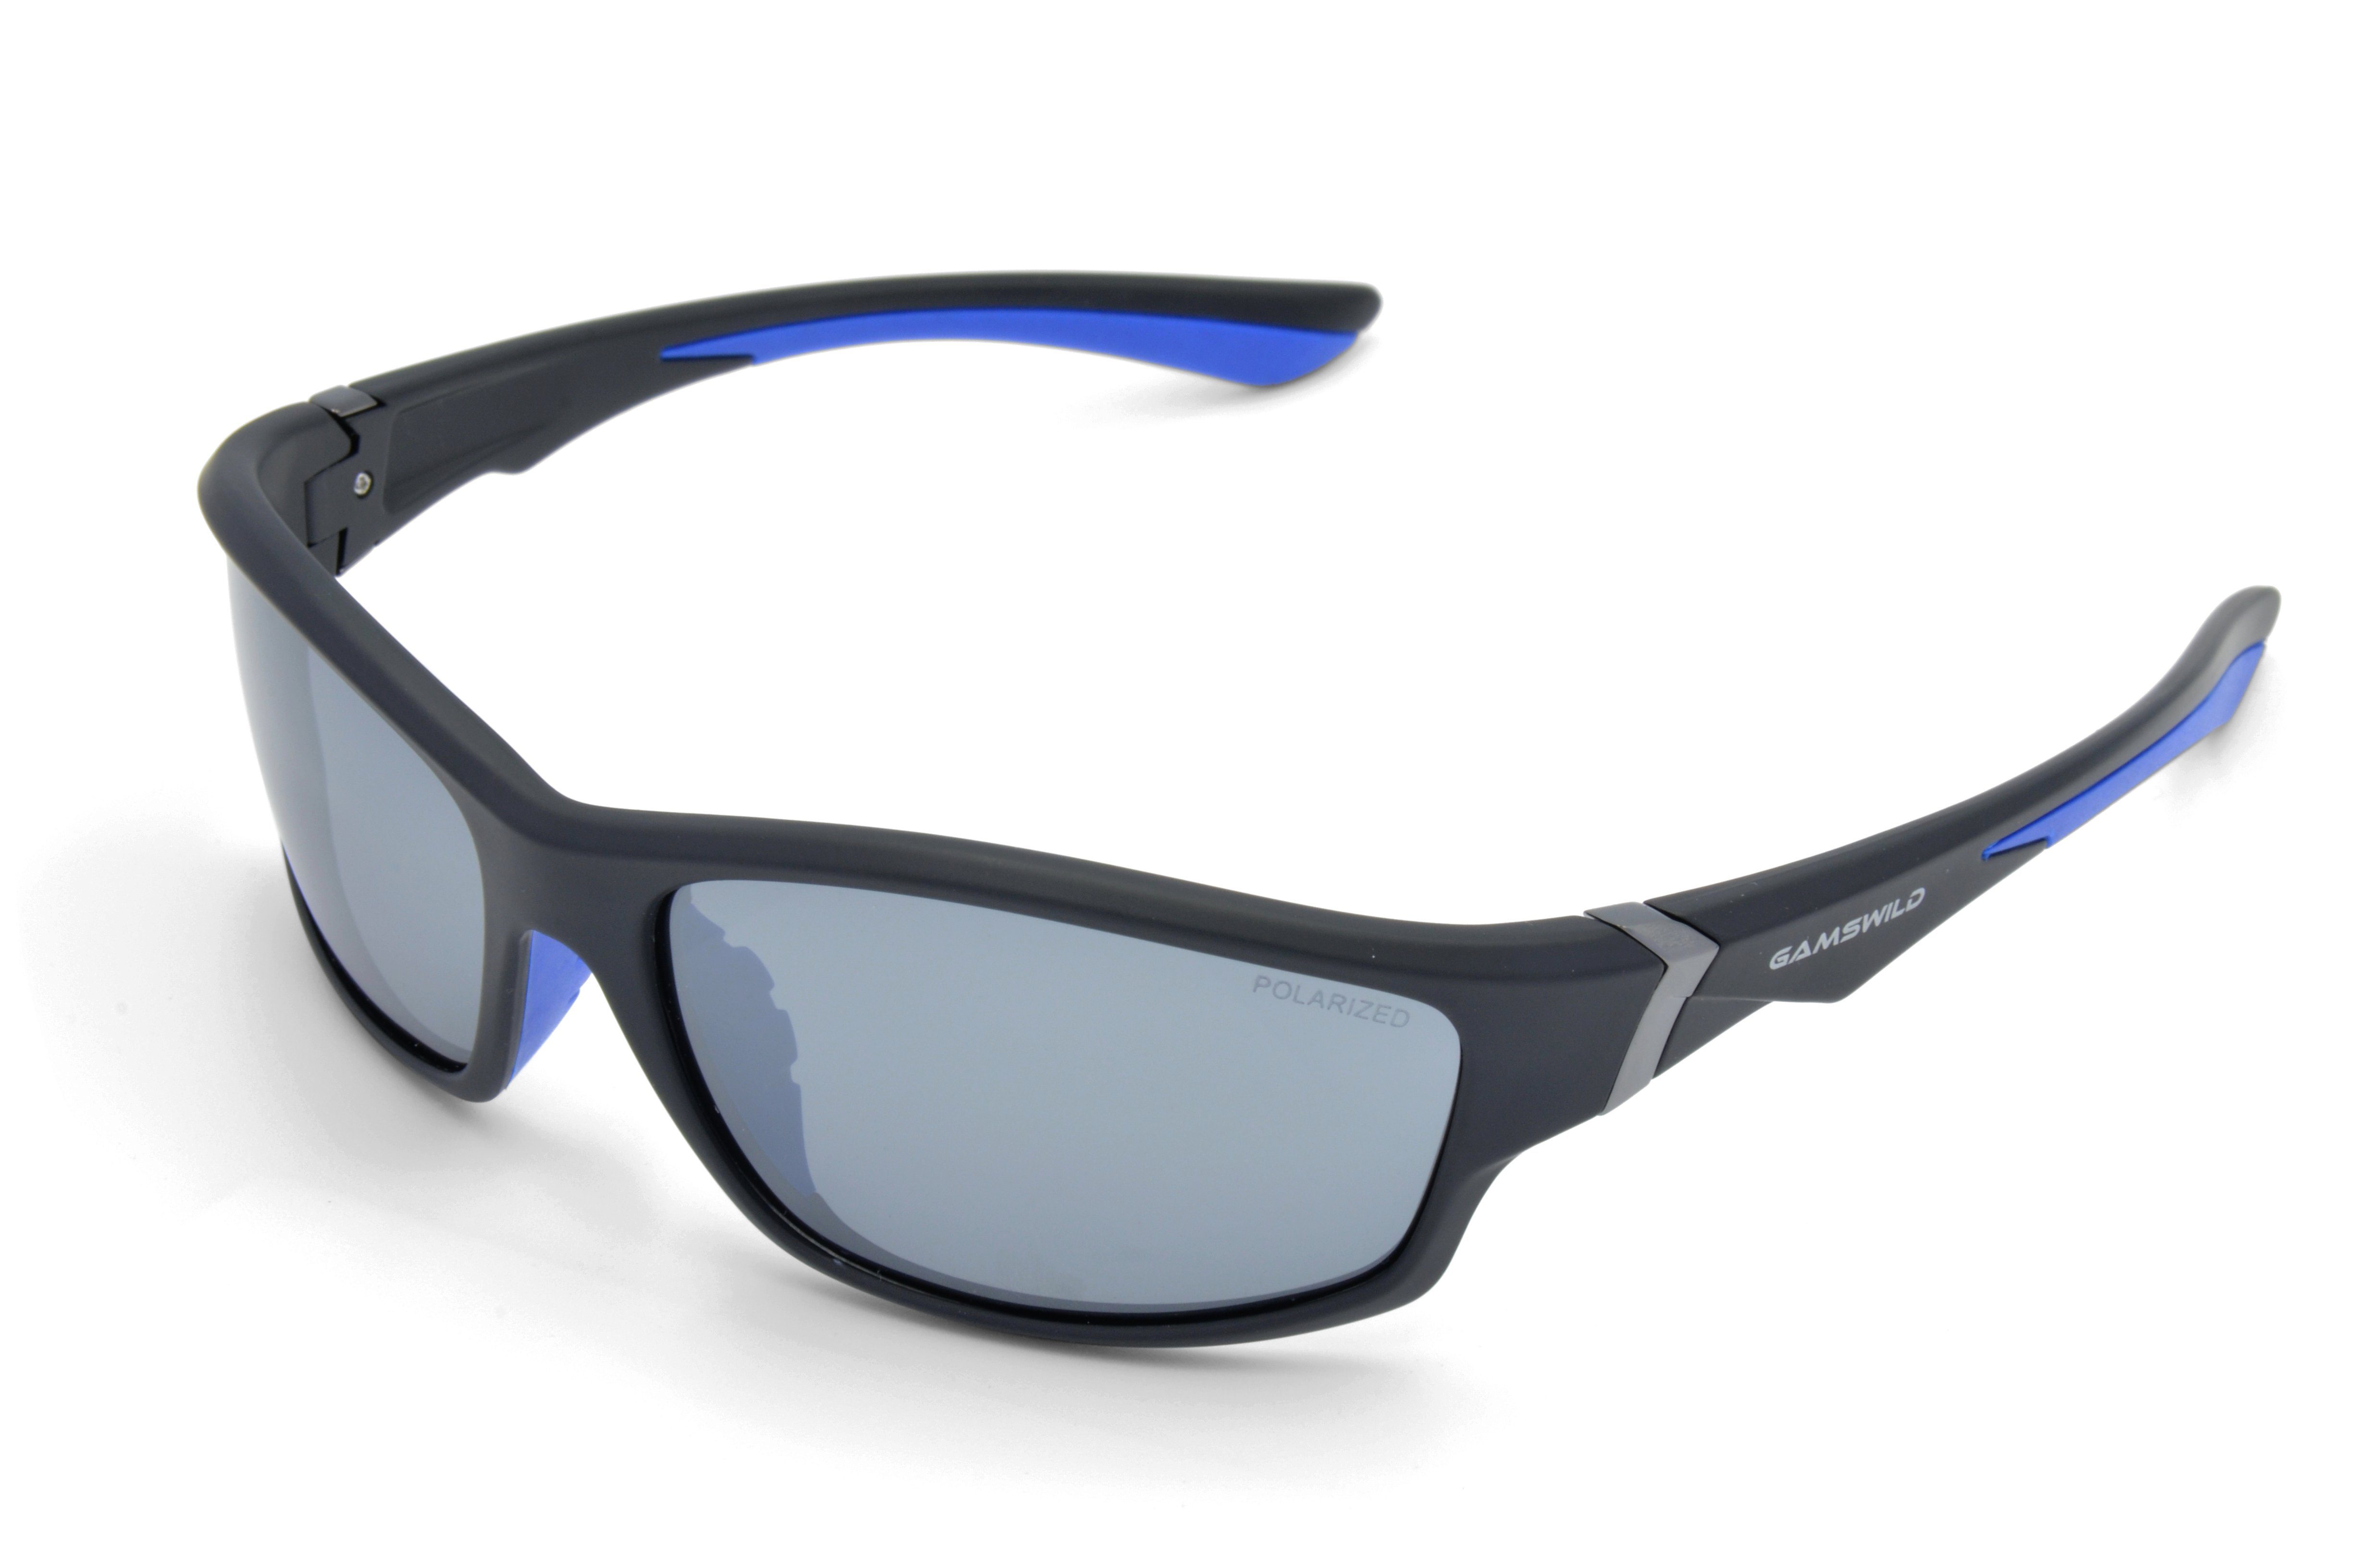 Gamswild Sportbrille »WS6036 Sportbrille Sonnenbrille Damen Herren  Fahrradbrille Skibrille Unisex, blau, lila, rot«, polarisierte Gläser  online kaufen | OTTO